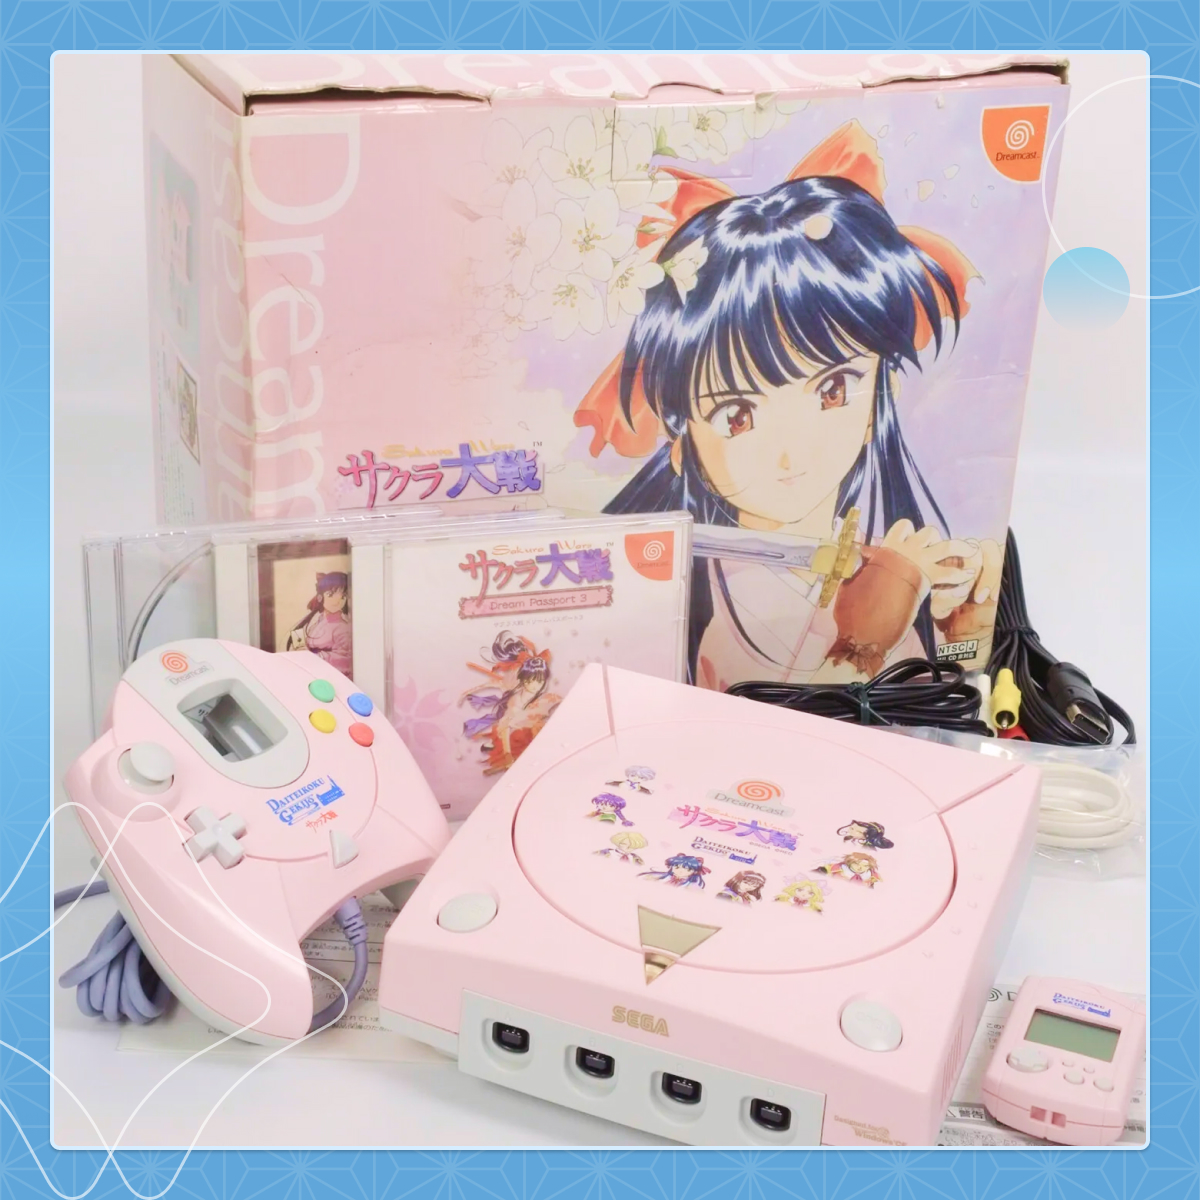 Collectionneurs de Dreamcast, vous allez craquer ! ️🎮 La Dreamcast collector Sakura Wars est disponible sur ZenMarket . Console rose et goodies Sakura Wars inclus !🌸#SakuraWars #Dreamcast C'est par ici ⬇️ i.mtr.cool/sztgxwncxp